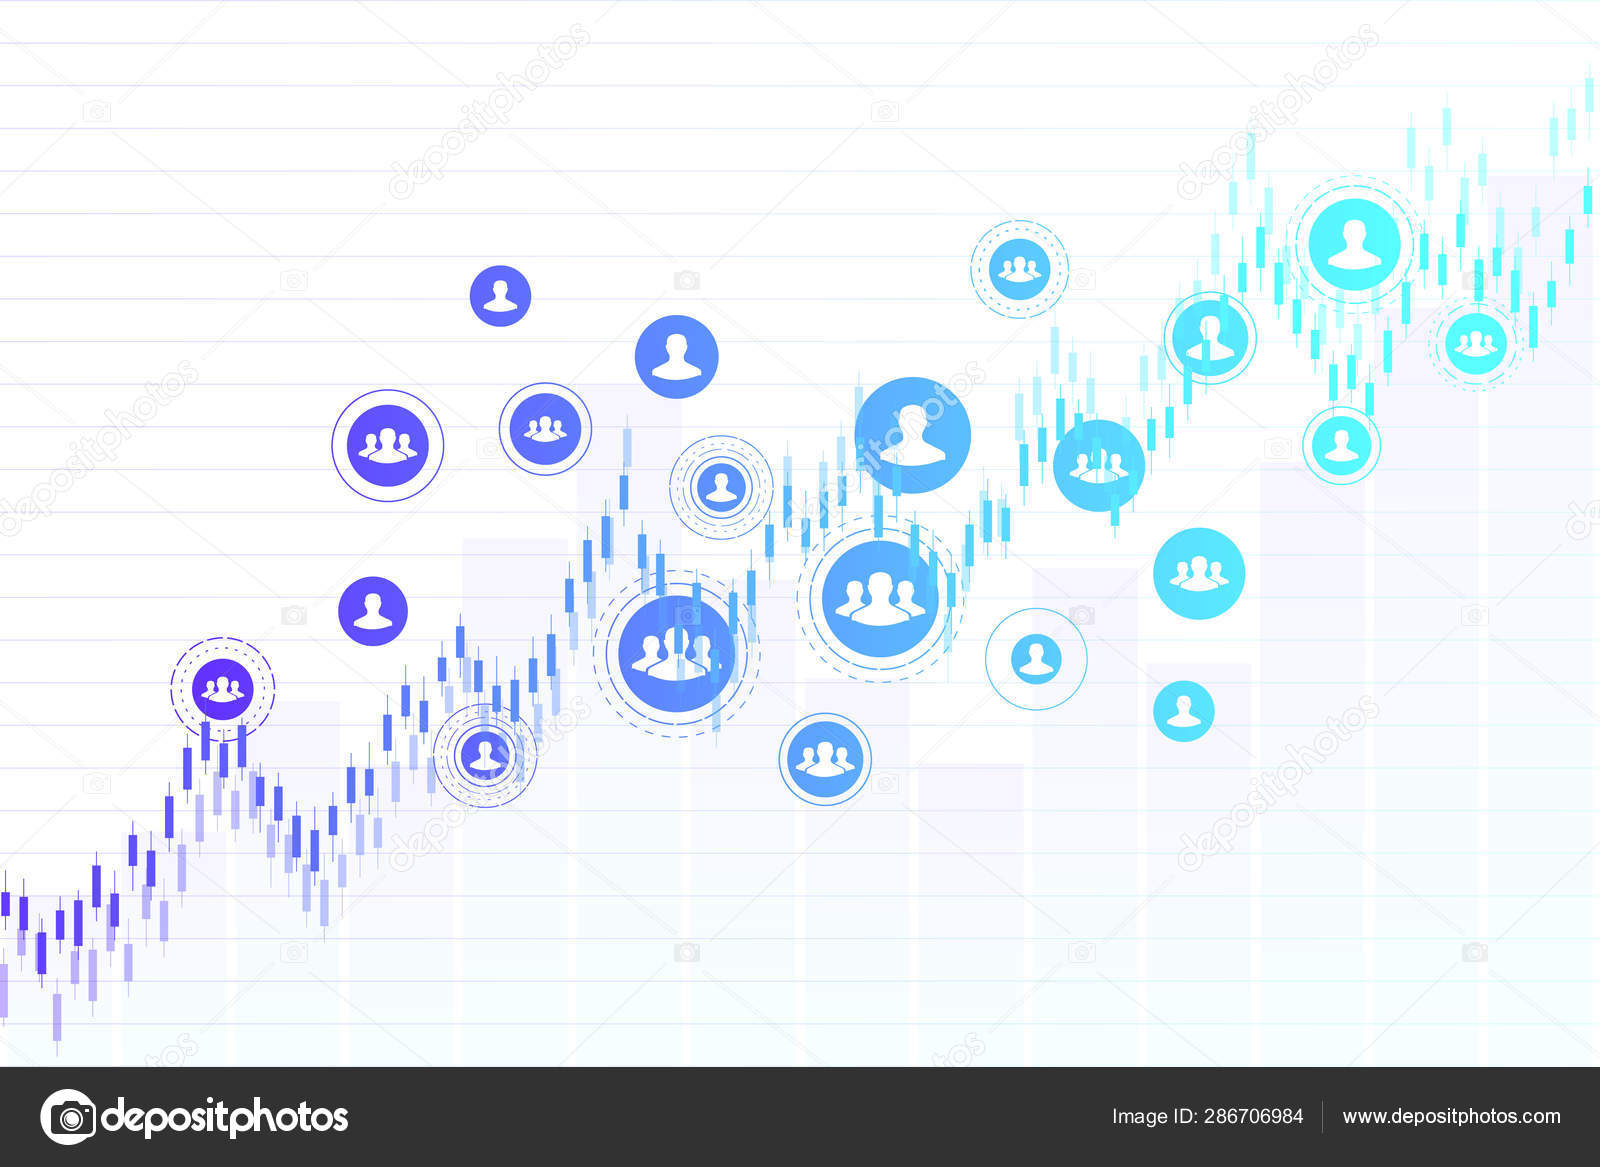 Idea Stock Chart